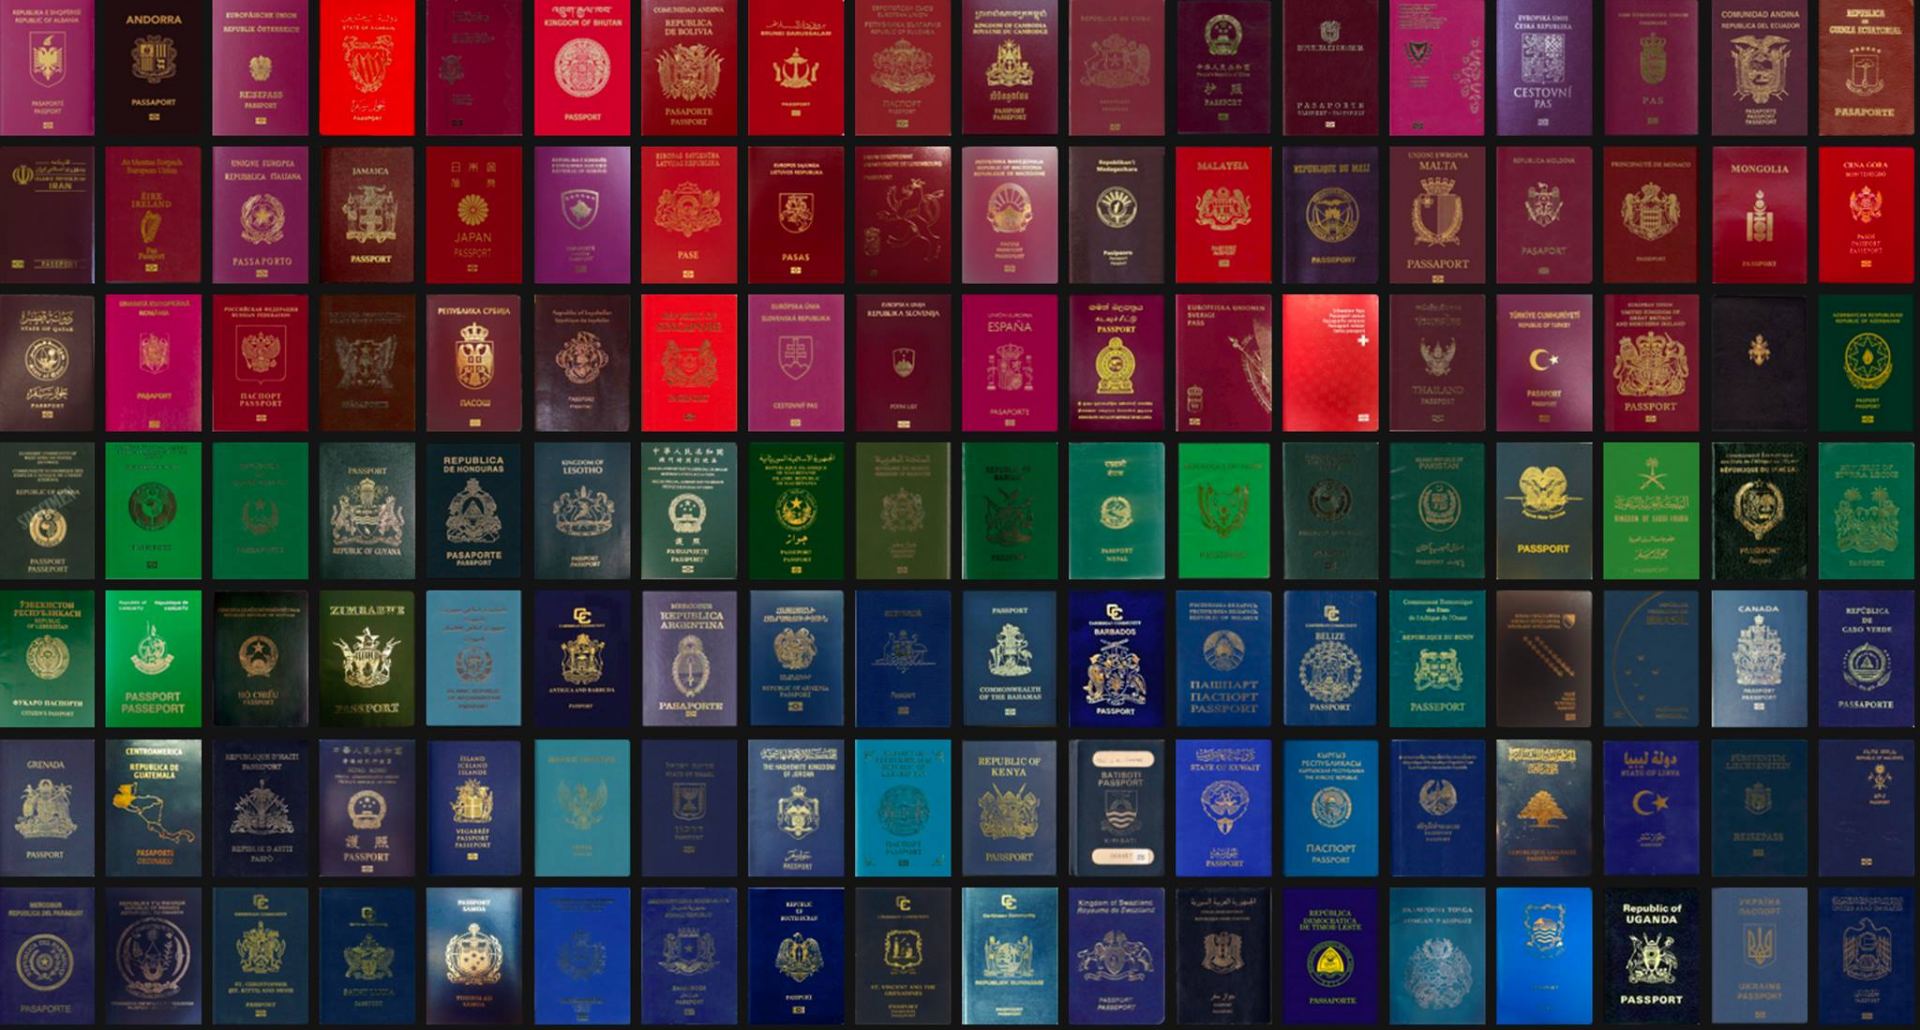 S. Korea ranks 3rd in global passport index